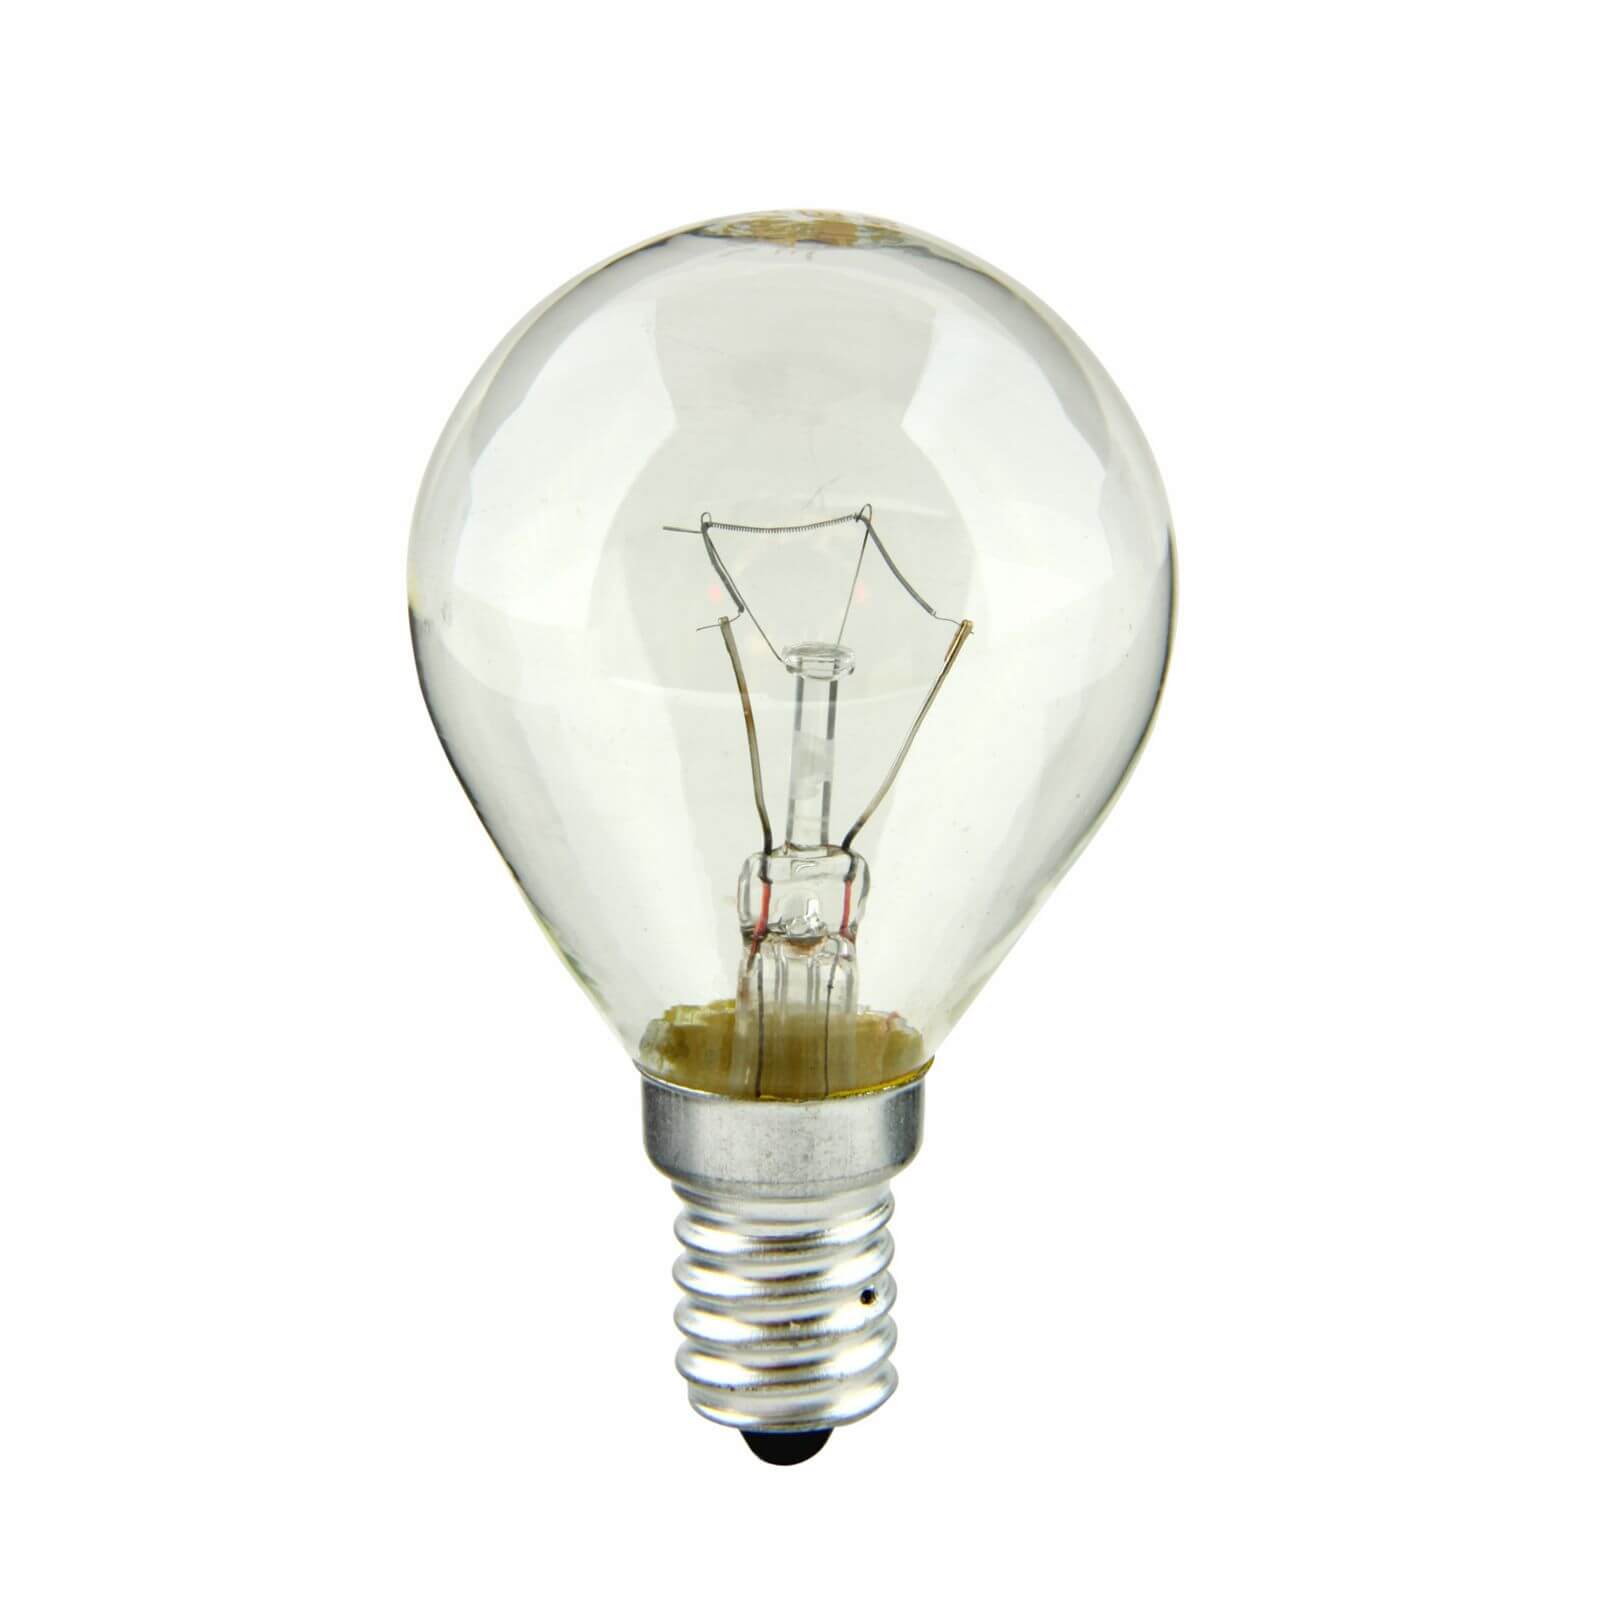 SES 40W Oven Light Bulb